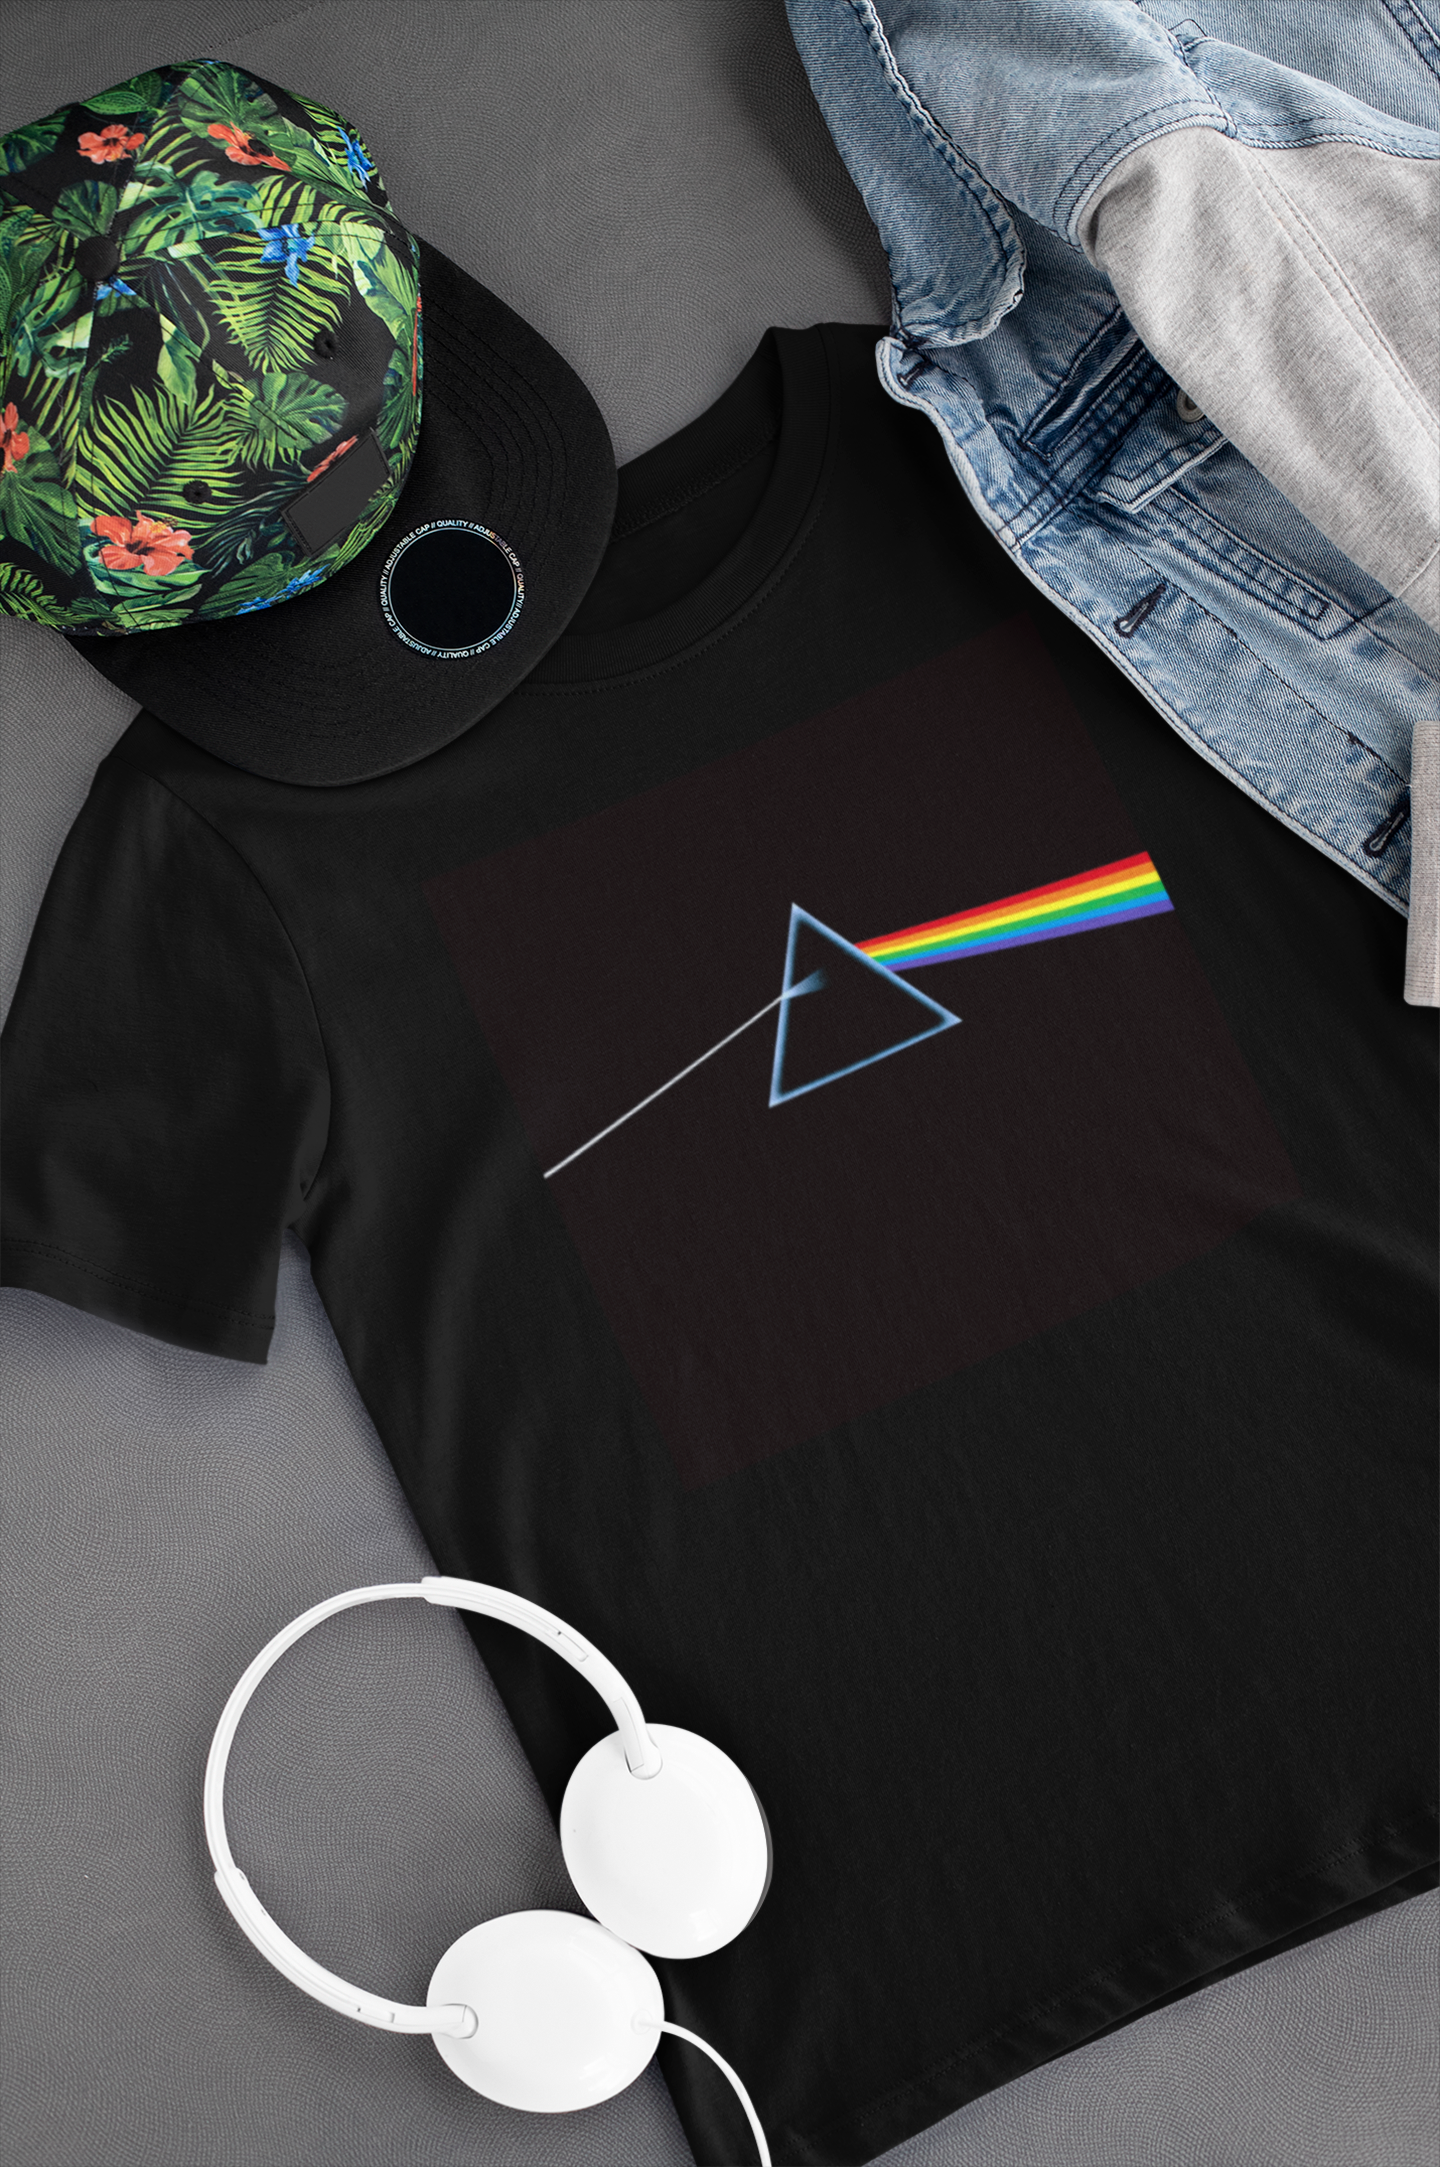 Camiseta "The Dark Side of the Moon - Pink Floyd" - Álbum - Música